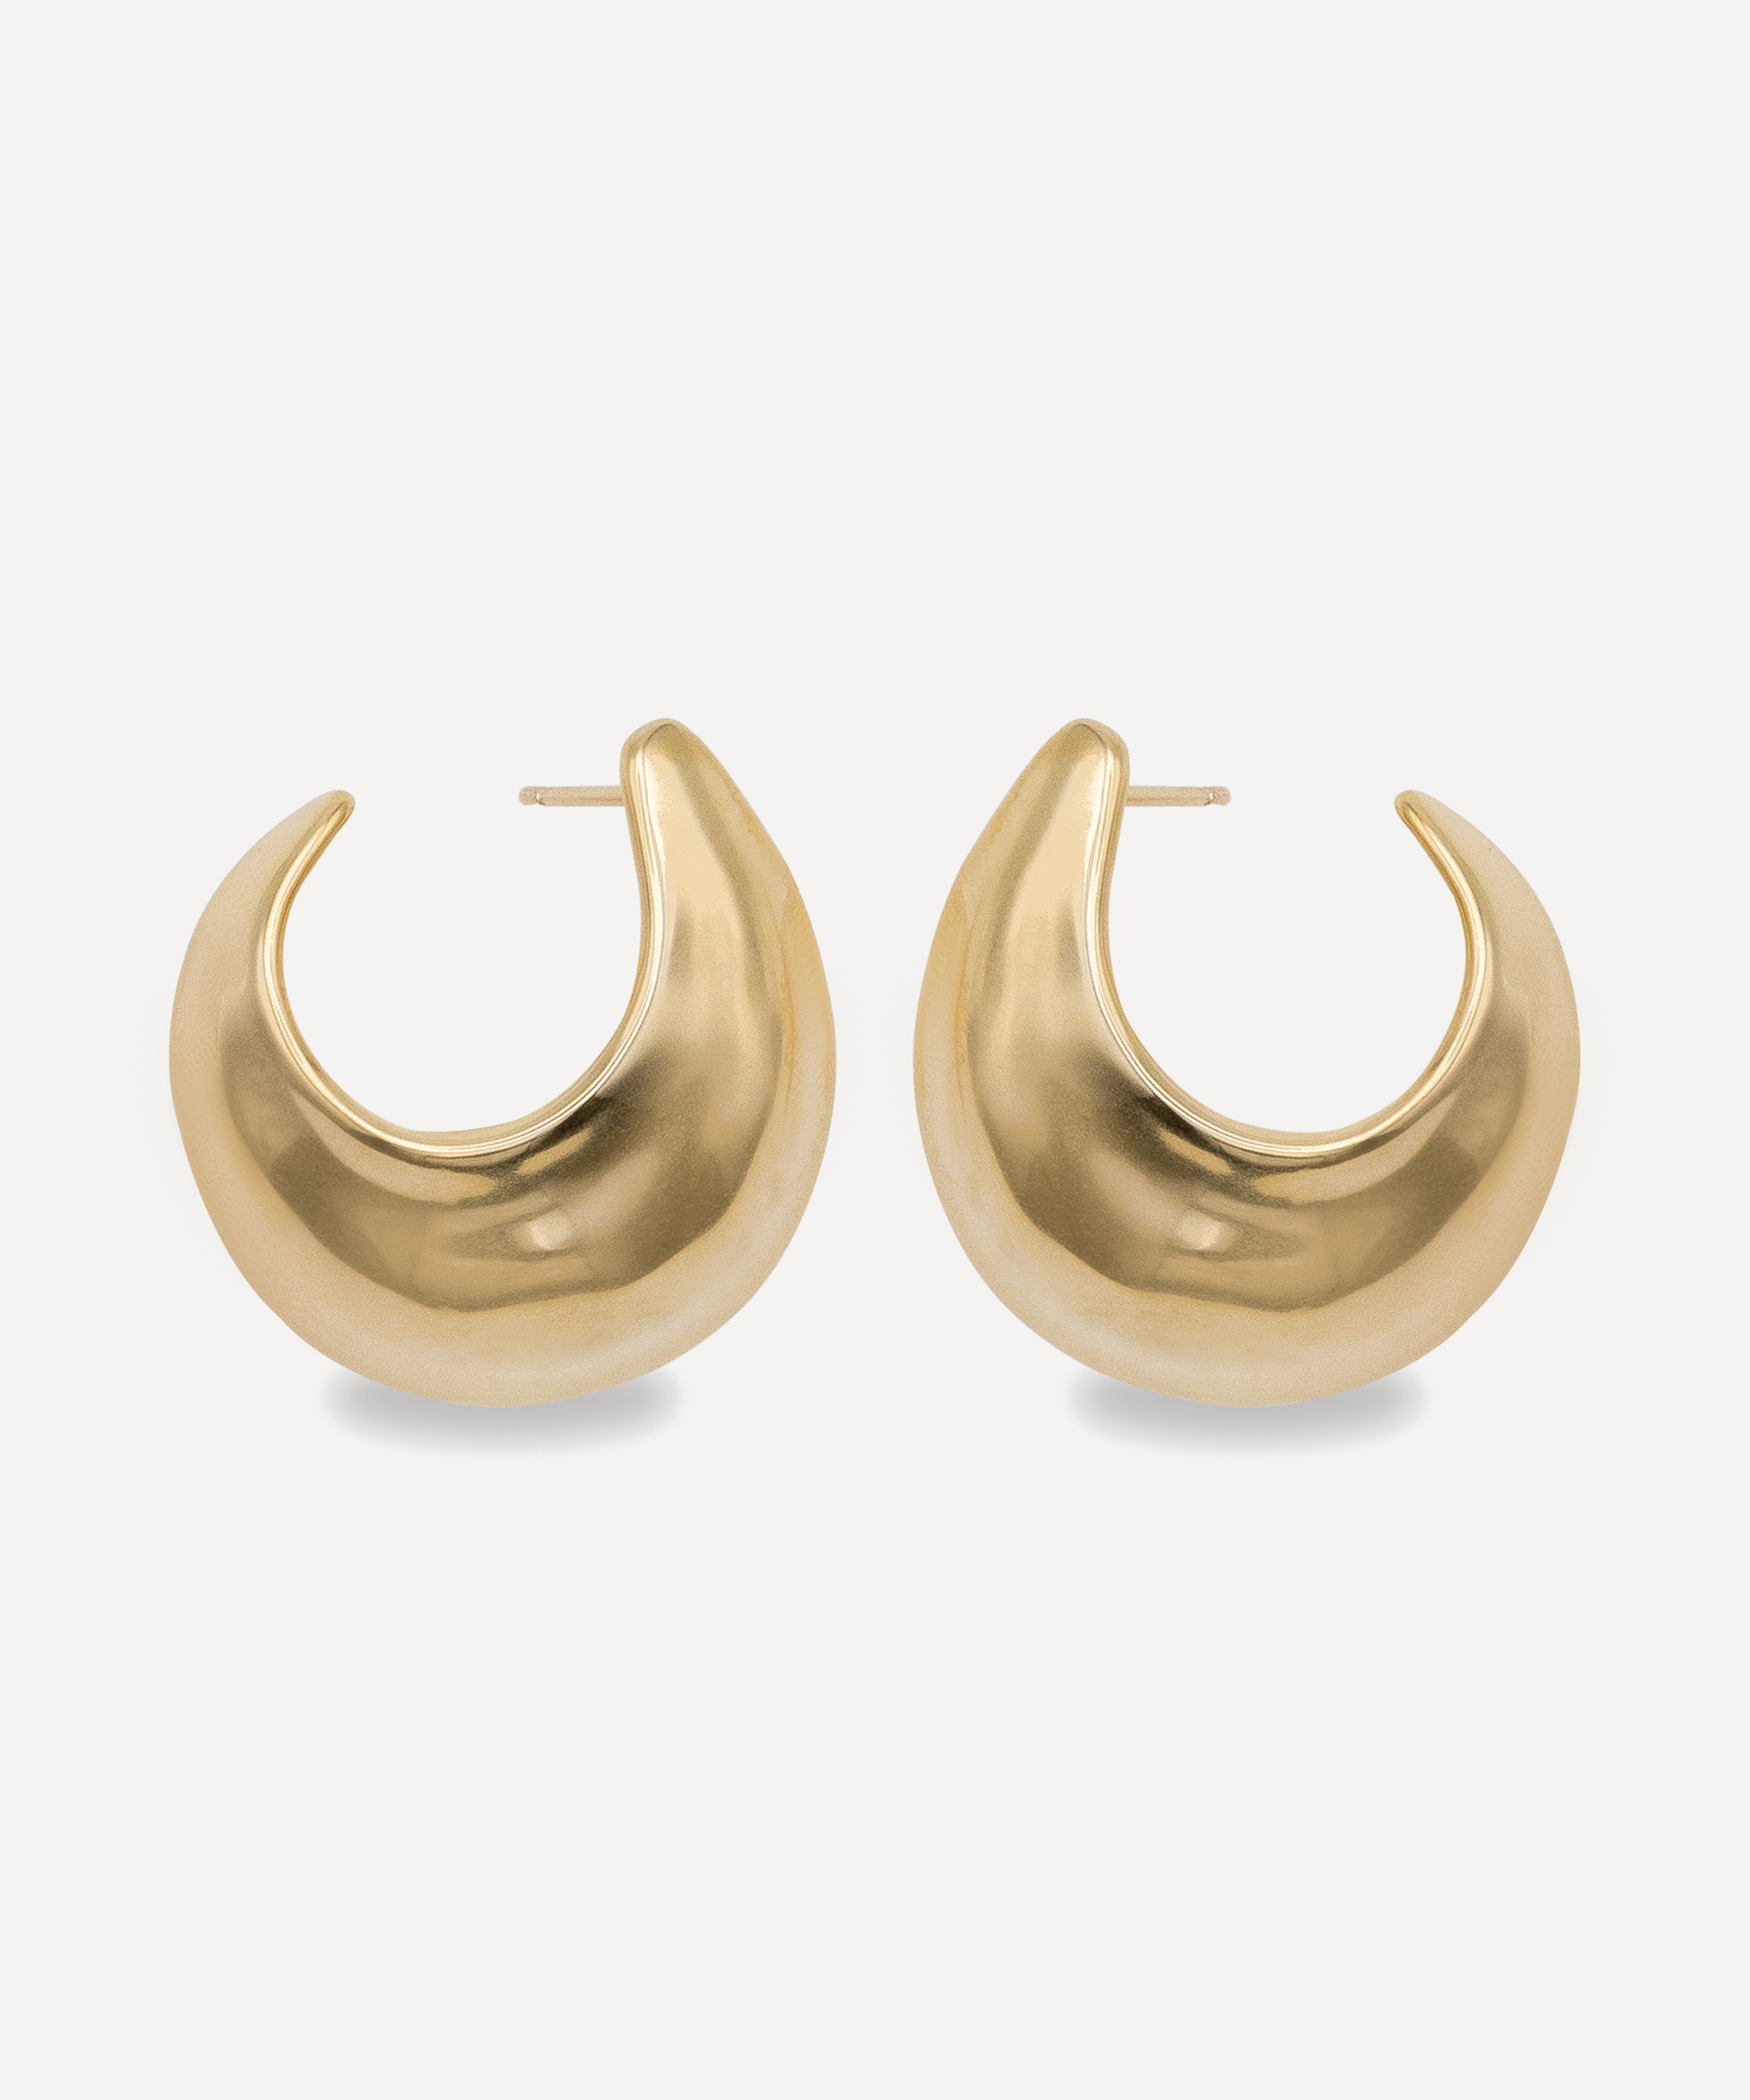 By Pariah - 14ct Gold-Plated Vermeil Silver Sabine Medium Hoop Earrings image number 0